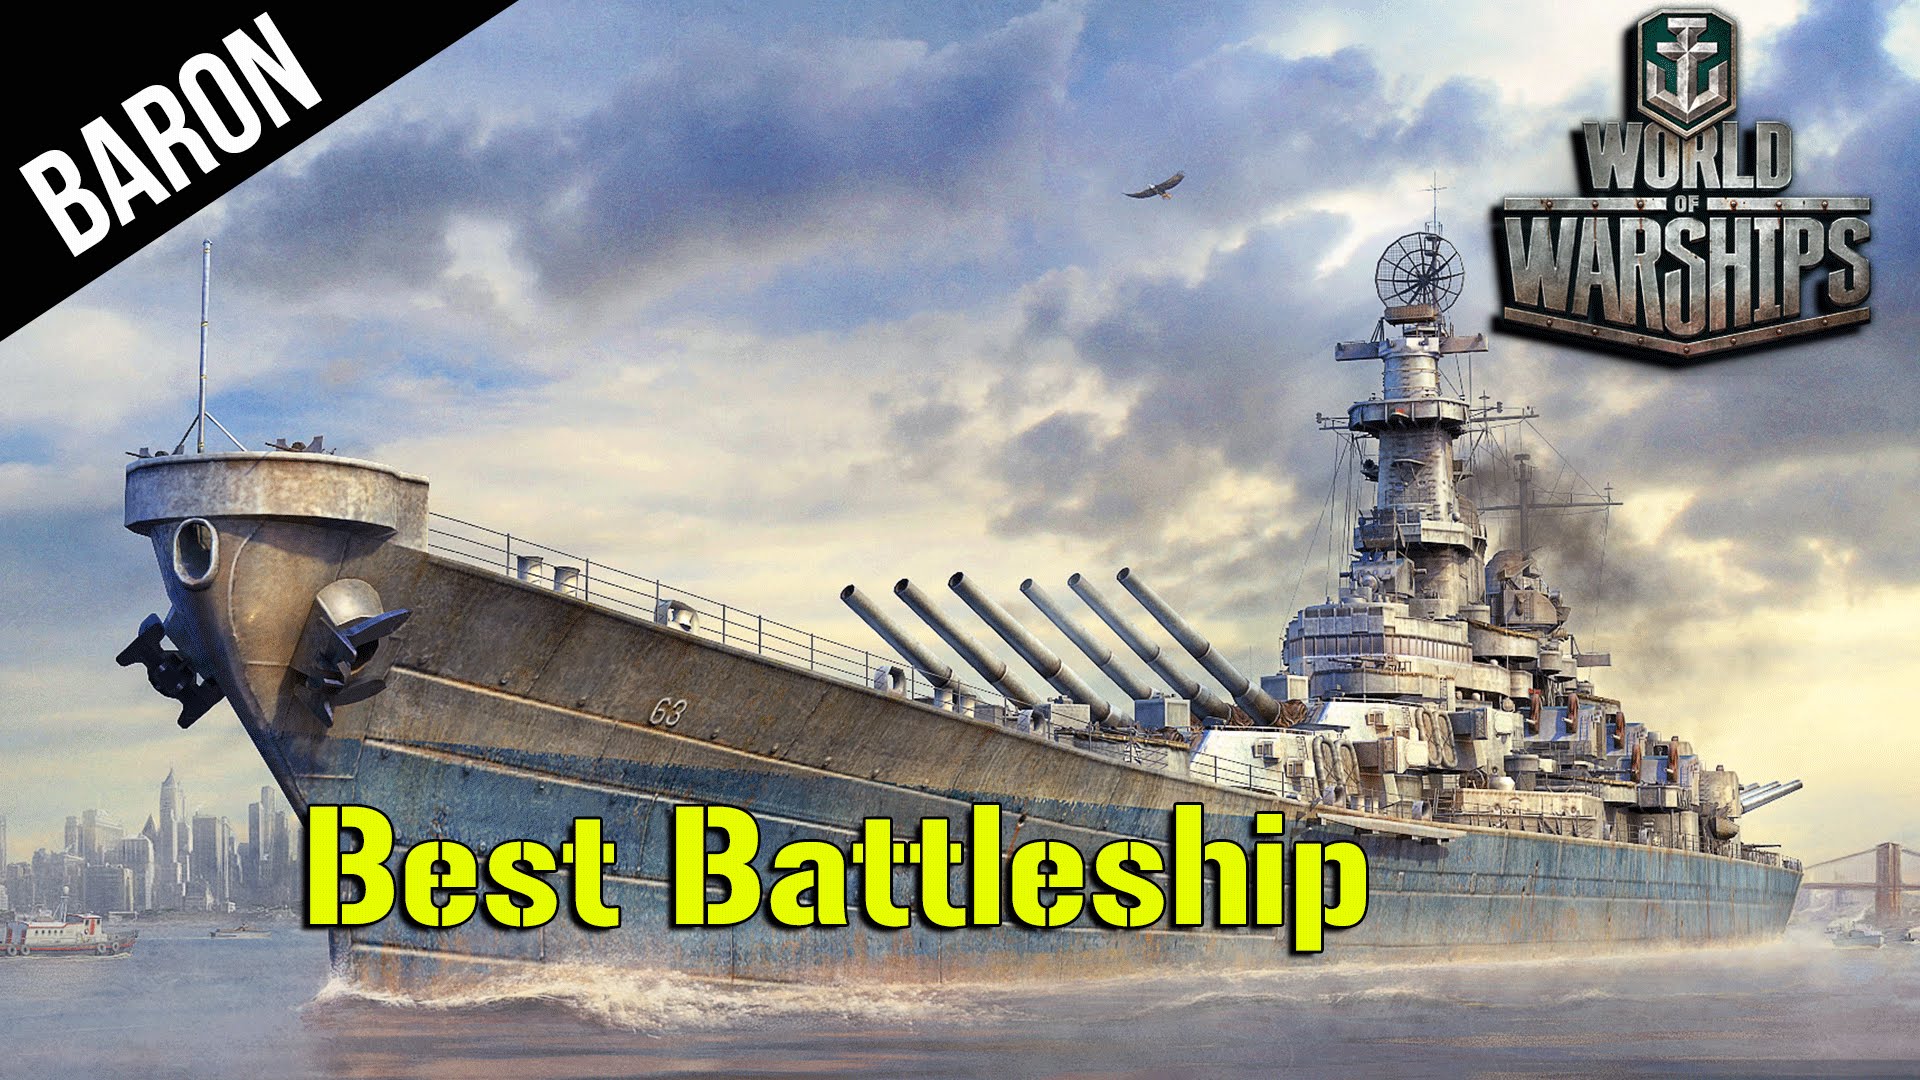 High Resolution Wallpaper | World Of Battleships 1920x1080 px